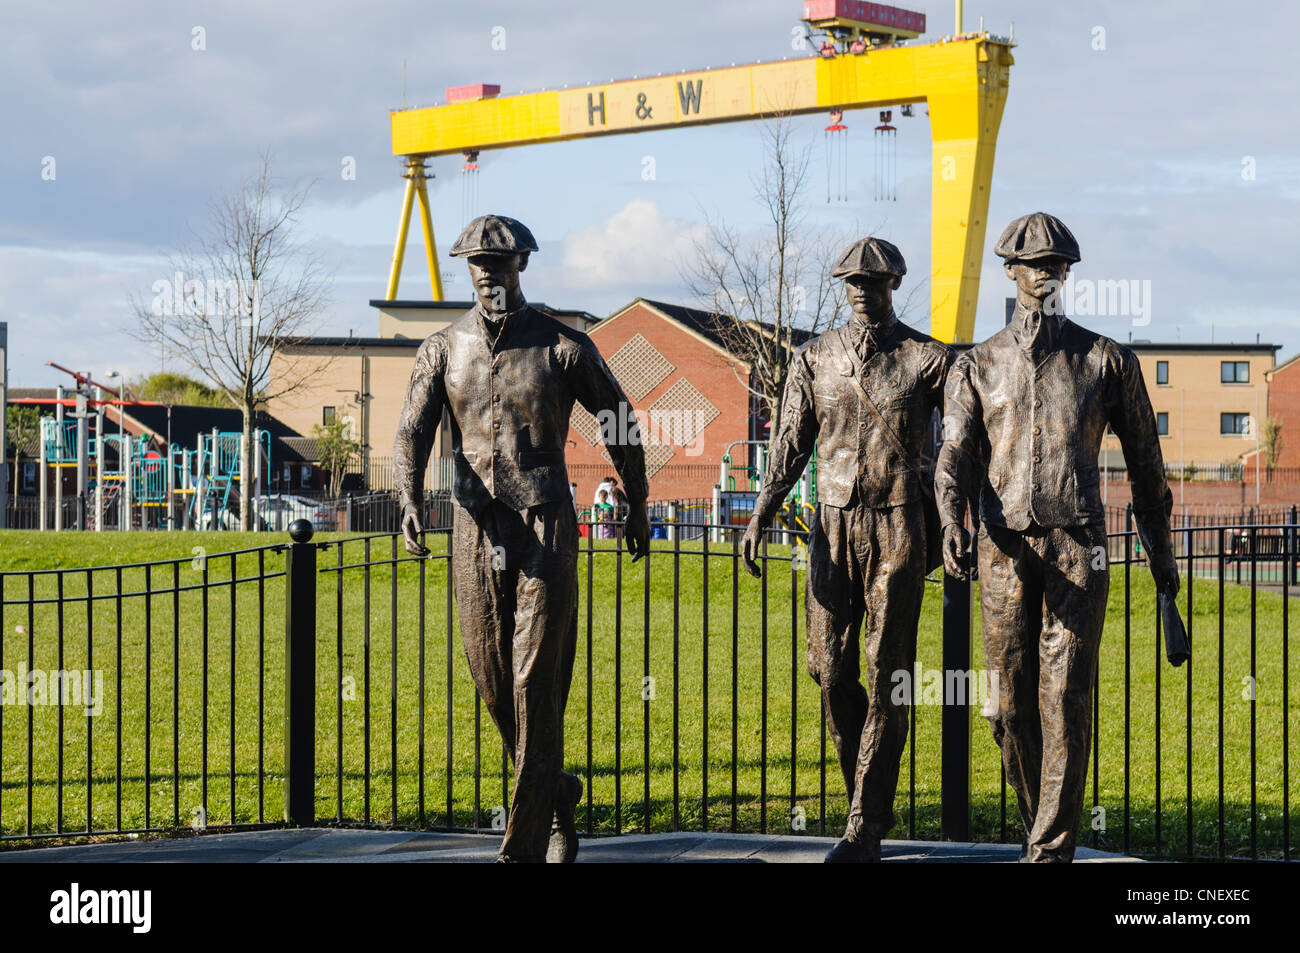 Statues de triage pour commémorer les hommes qui travaillaient dans les chantiers navals Harland and Wolff. Artiste : Ross Wilson. Banque D'Images